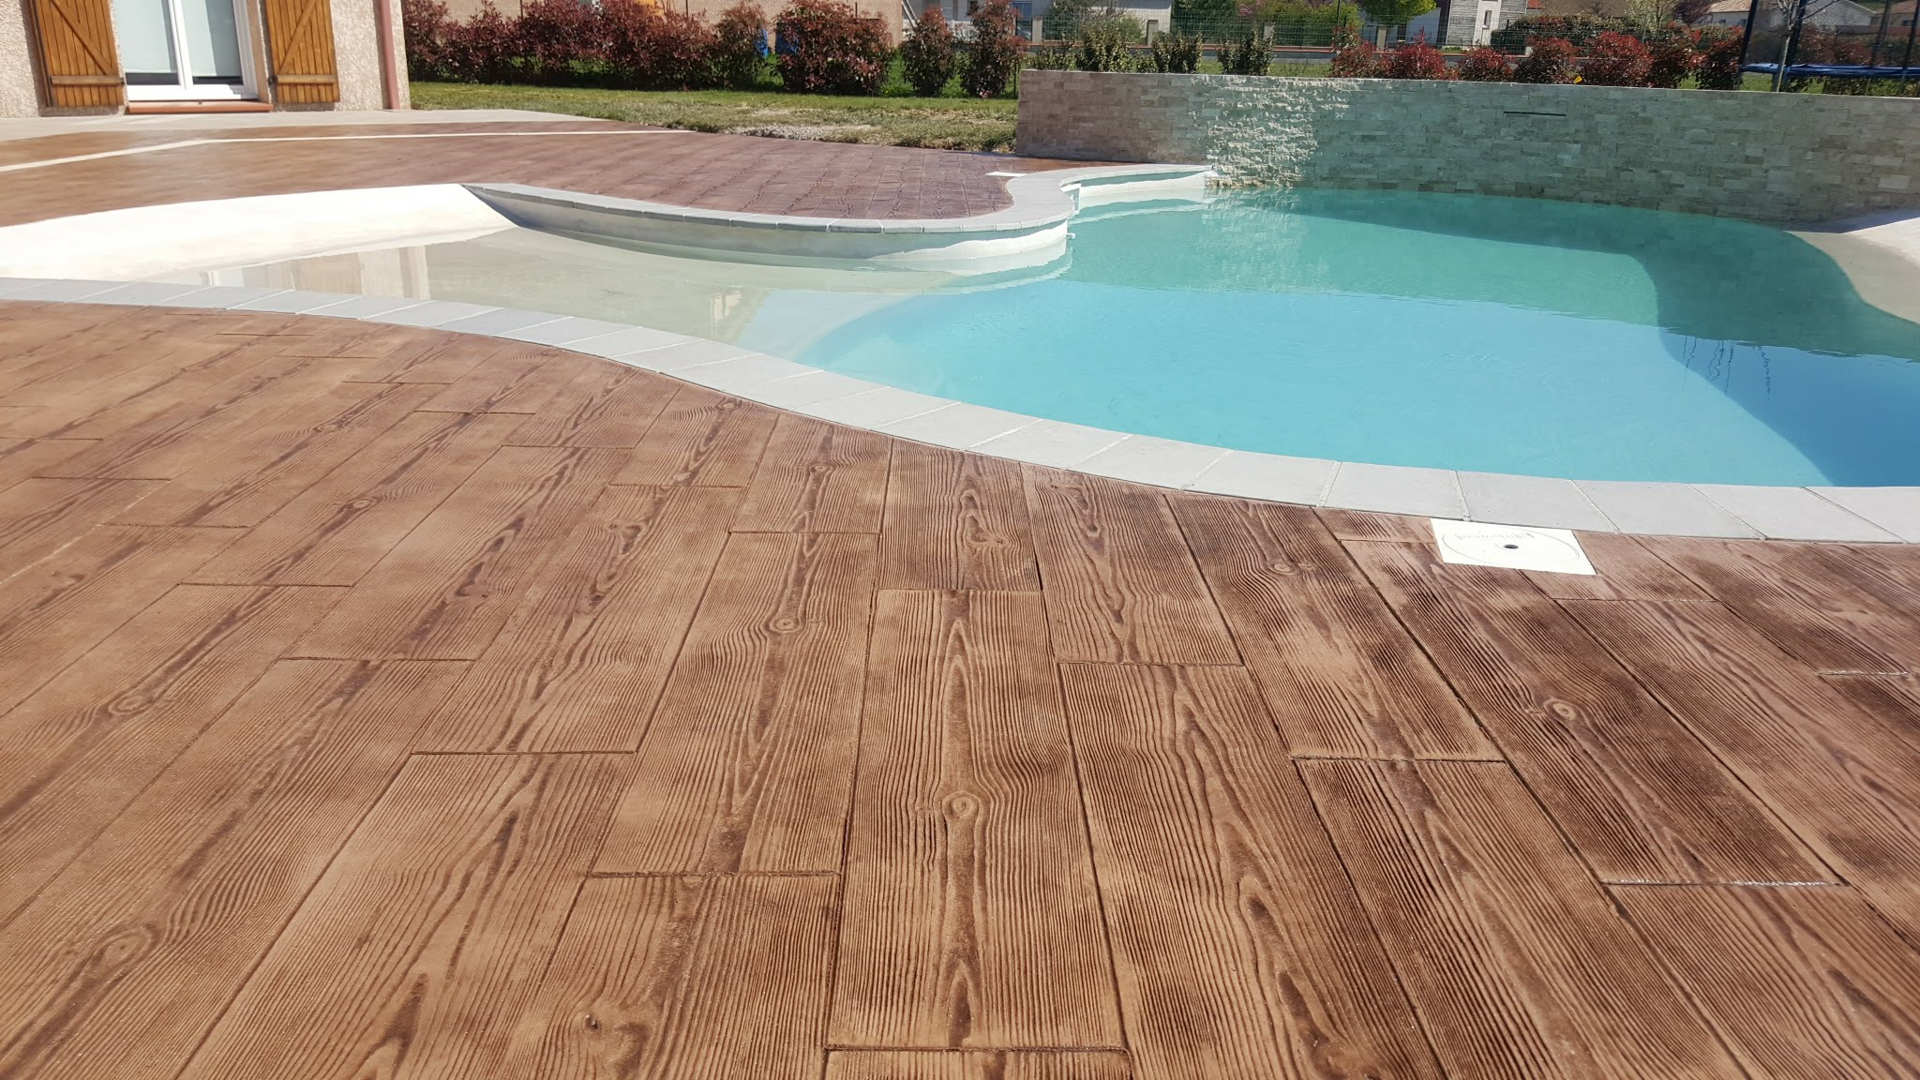 pavimento de concreto estampado de madera alrededor de la piscina